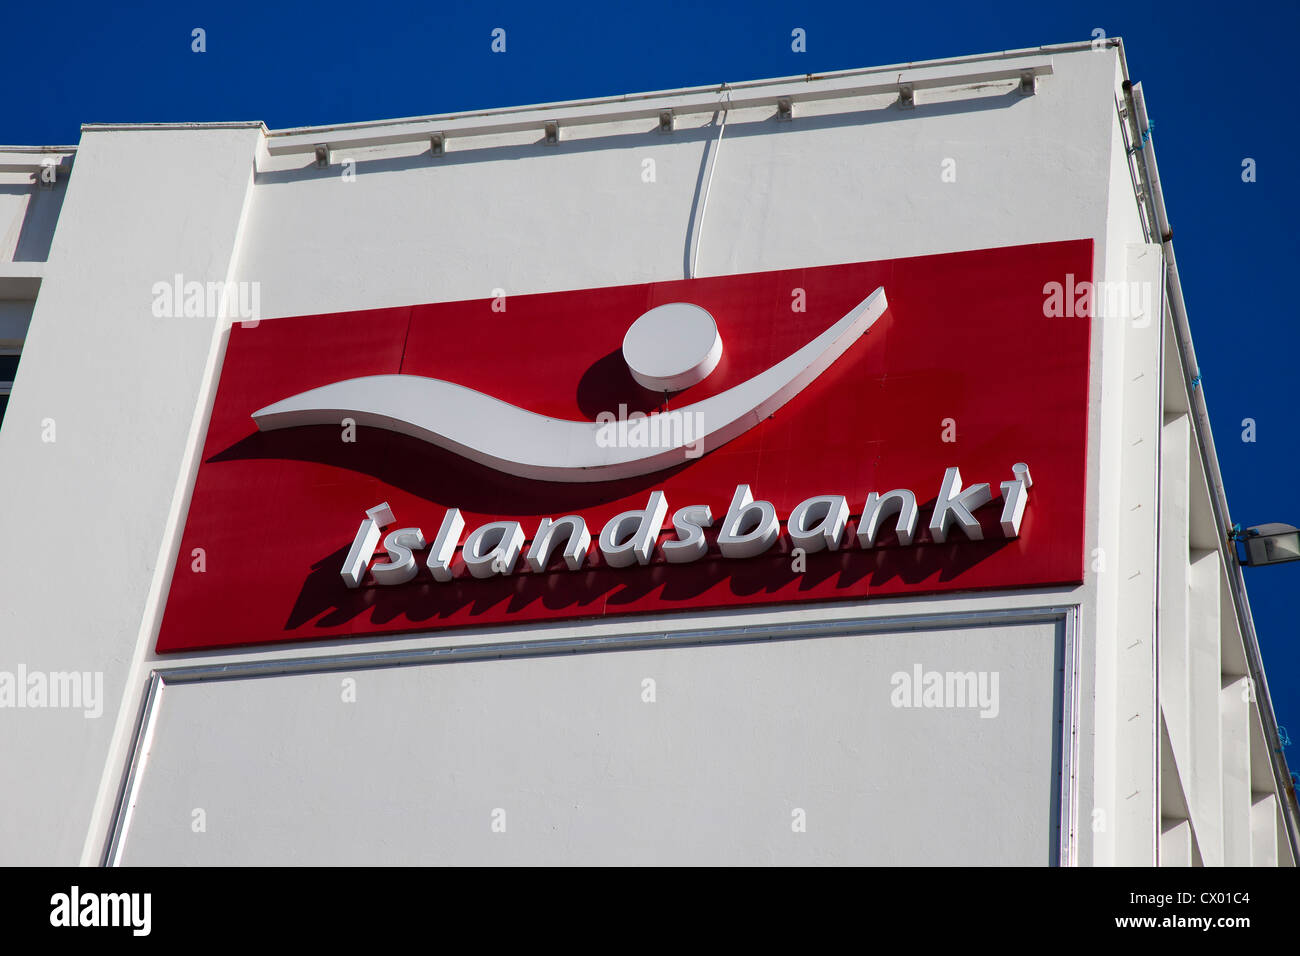 El banco "Islandbanki Islandia'. Foto de stock